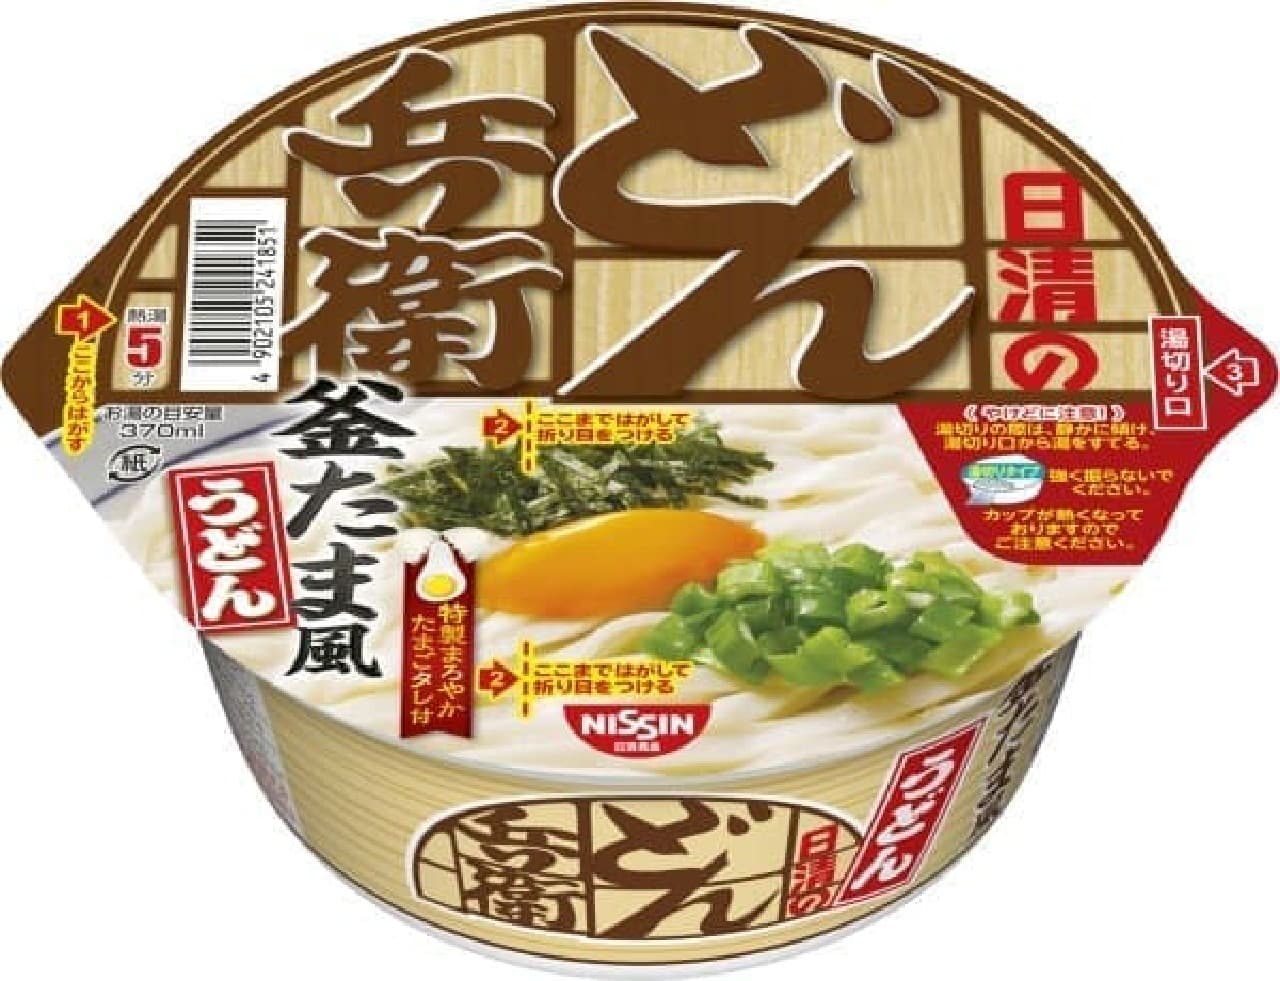 Nissin Foods "Nissin Donbei Kamatamafu Udon"